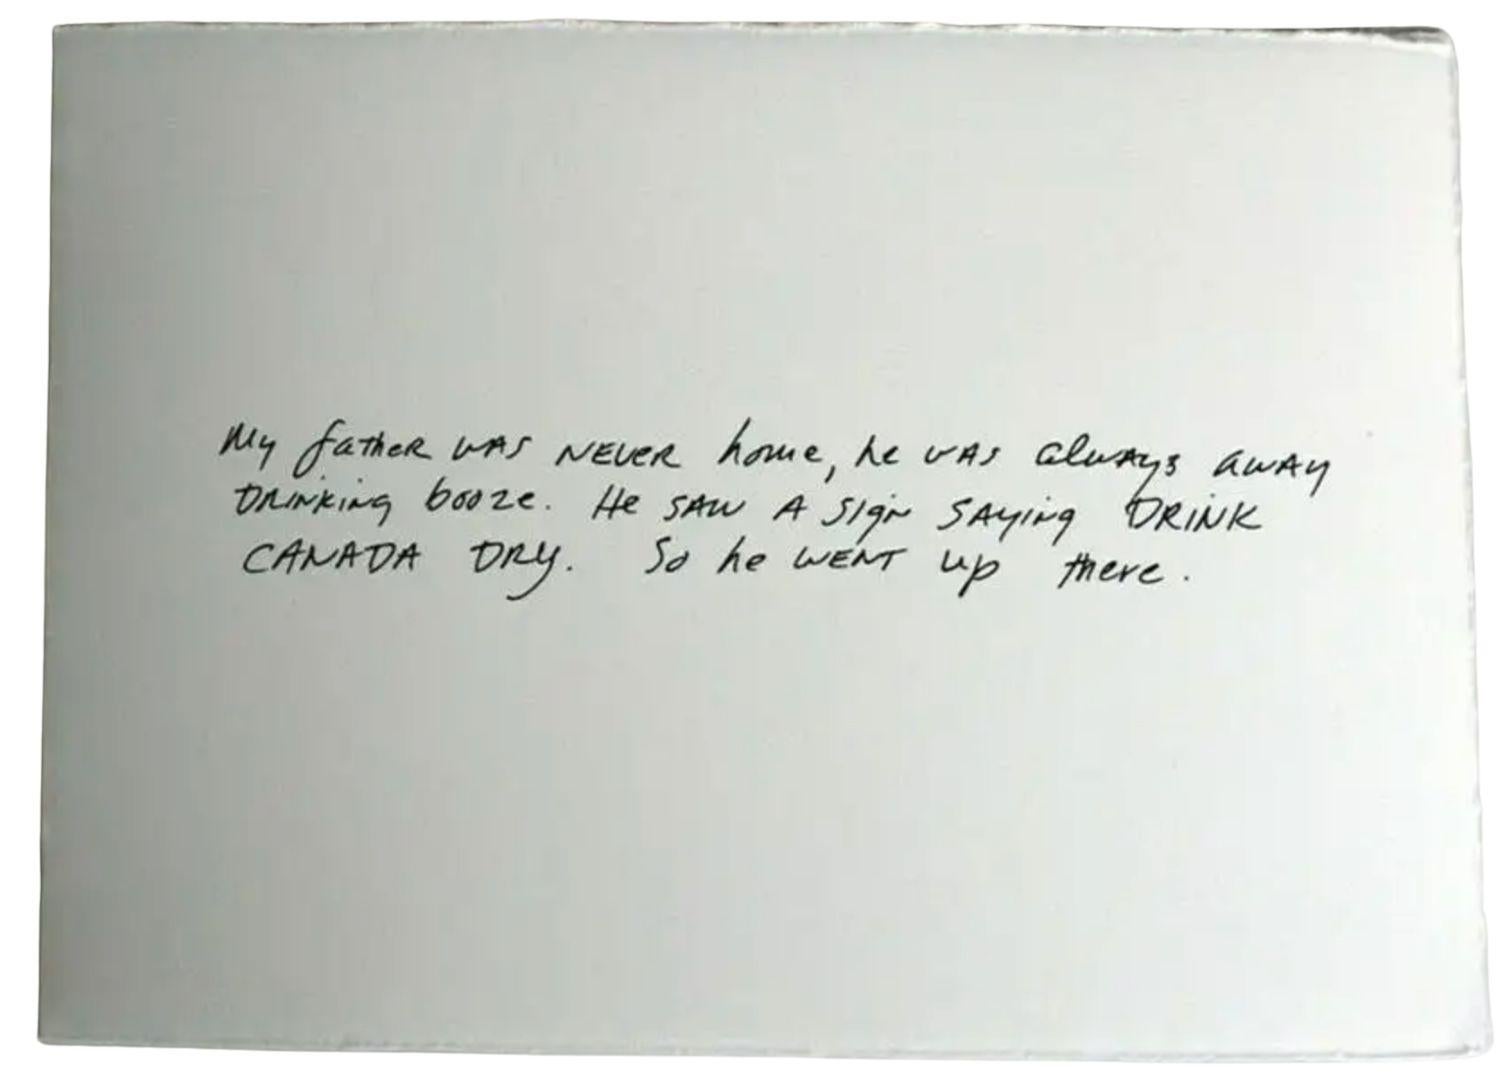 Richard Prince, The Greeting Card Jokes #3 : Canada Dry, impression estampée, 2011

Impression estampillée, sur papier vélin épais, pliée.
Comme neuf, jamais encadré ou exposé. Signé à la main et numéroté par l'artiste, au verso. Collection privée